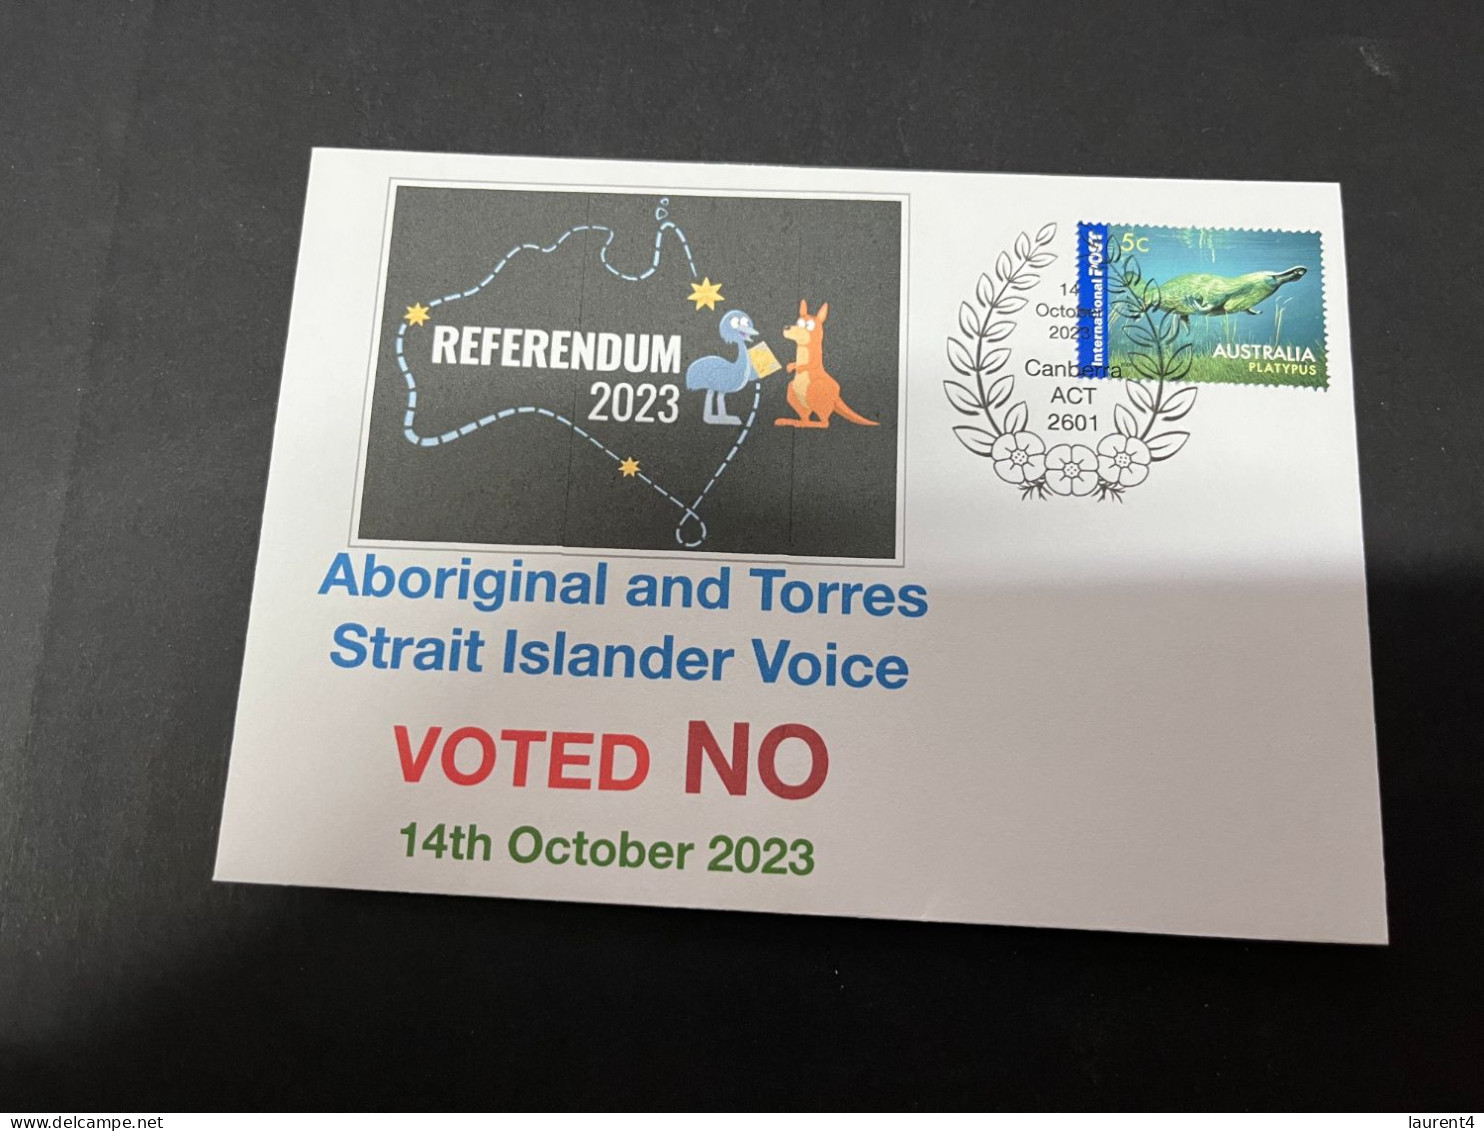 14-10-2023 (4 T 21) Australia Referendum 14-10-2023 - Aborignal & Torres Strait Islander Voice - Voted NO - Cartas & Documentos